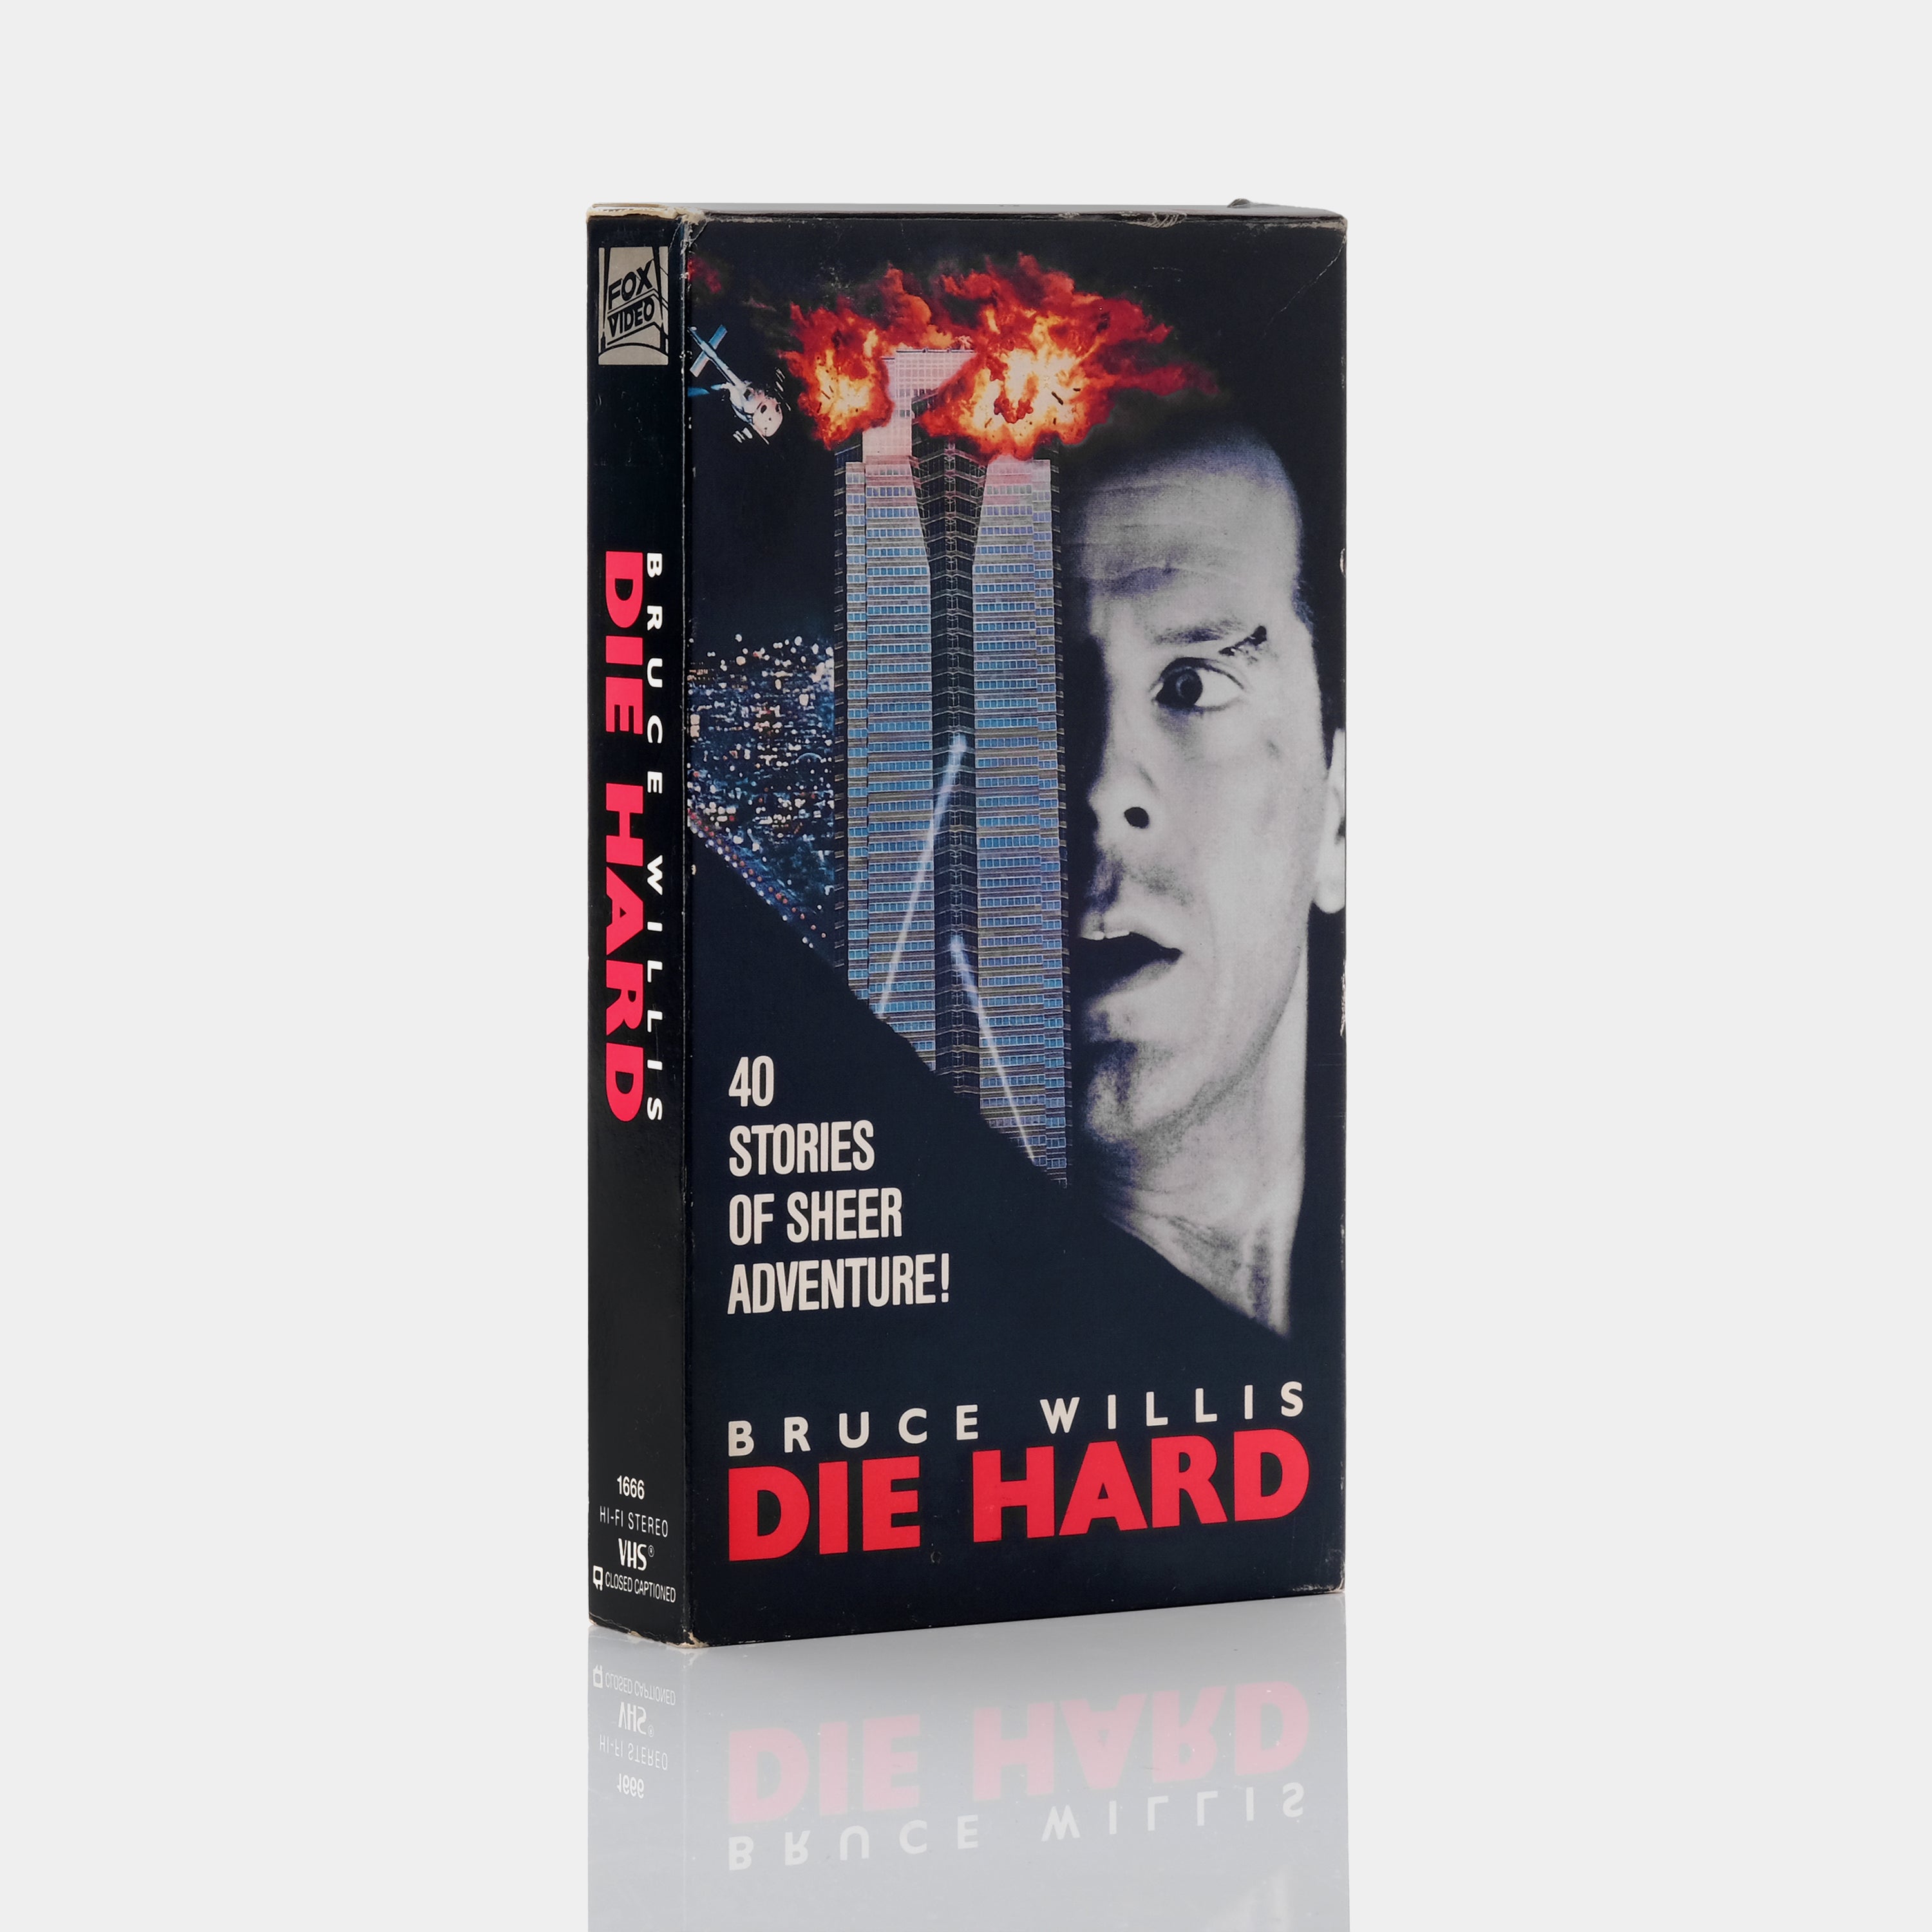 Die Hard VHS Tape